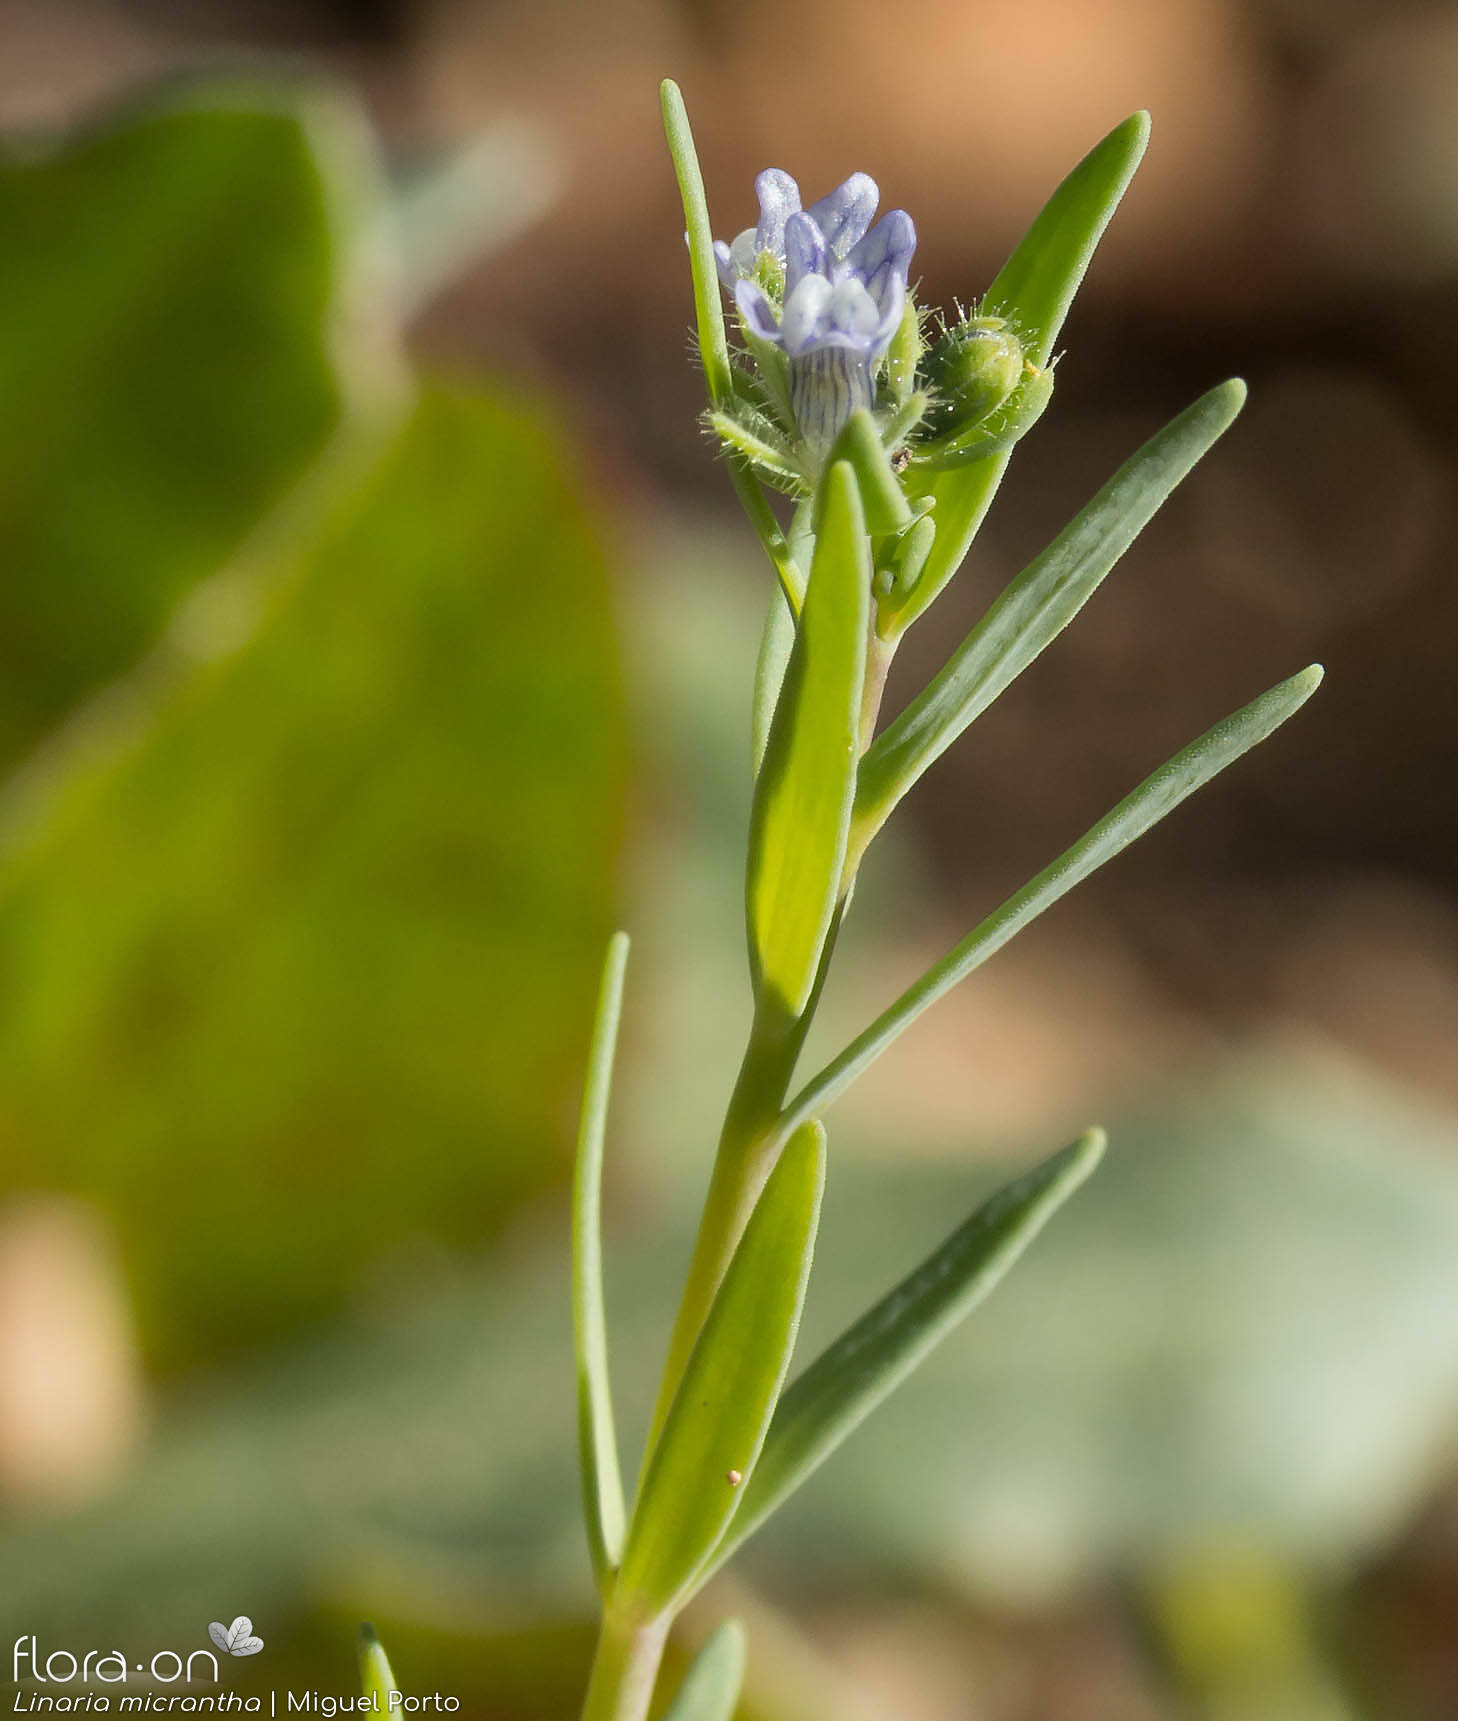 Linaria micrantha - Flor (geral) | Miguel Porto; CC BY-NC 4.0